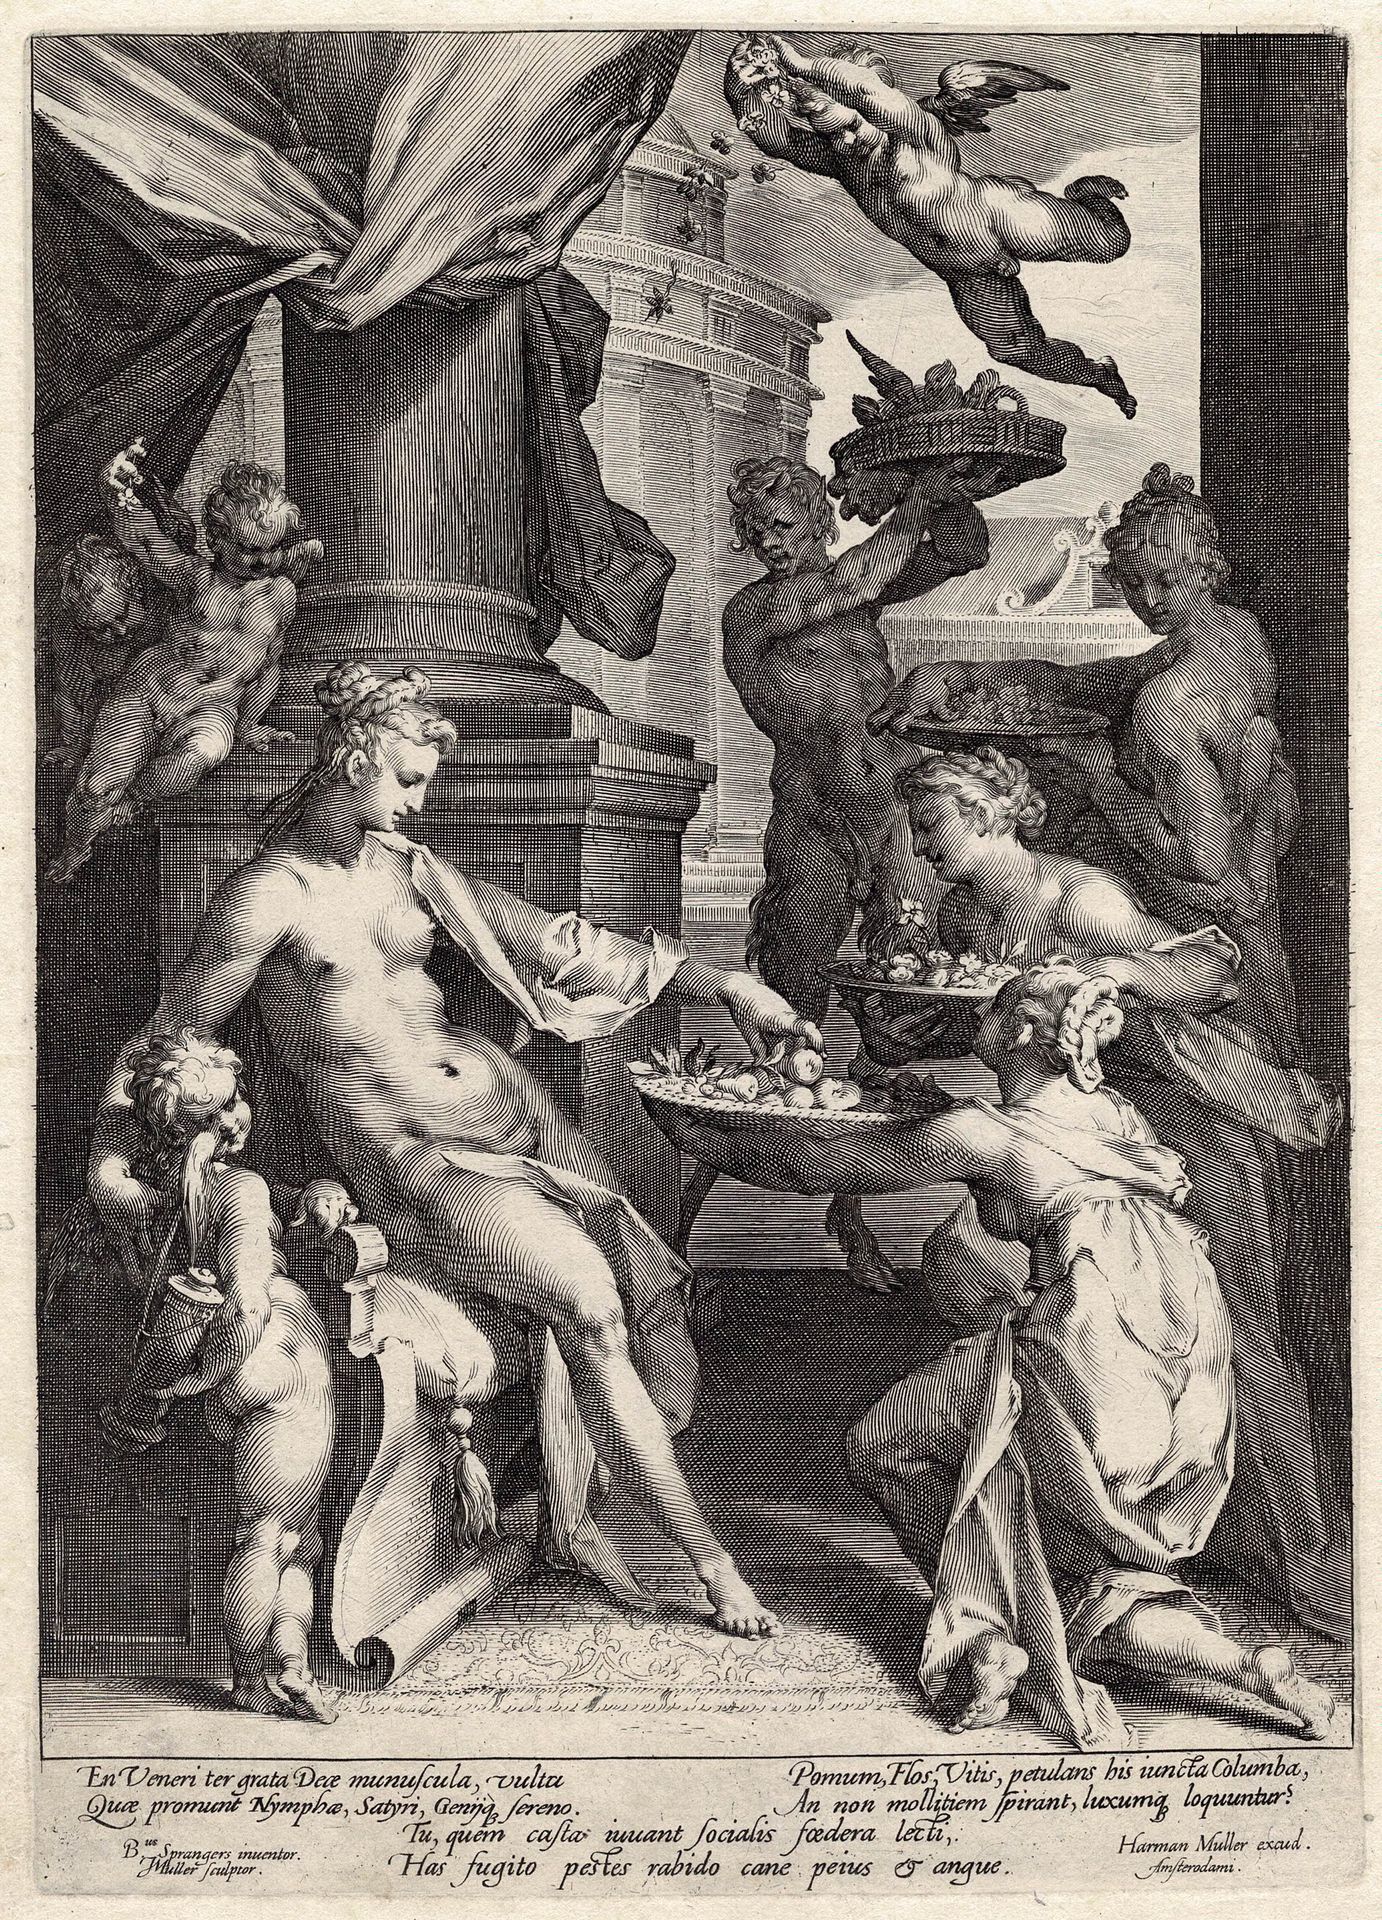 Jan Harmensz Muller (1571-1628), Bartholomeaus Spranger (1546-1611), Harmen Jans&hellip;